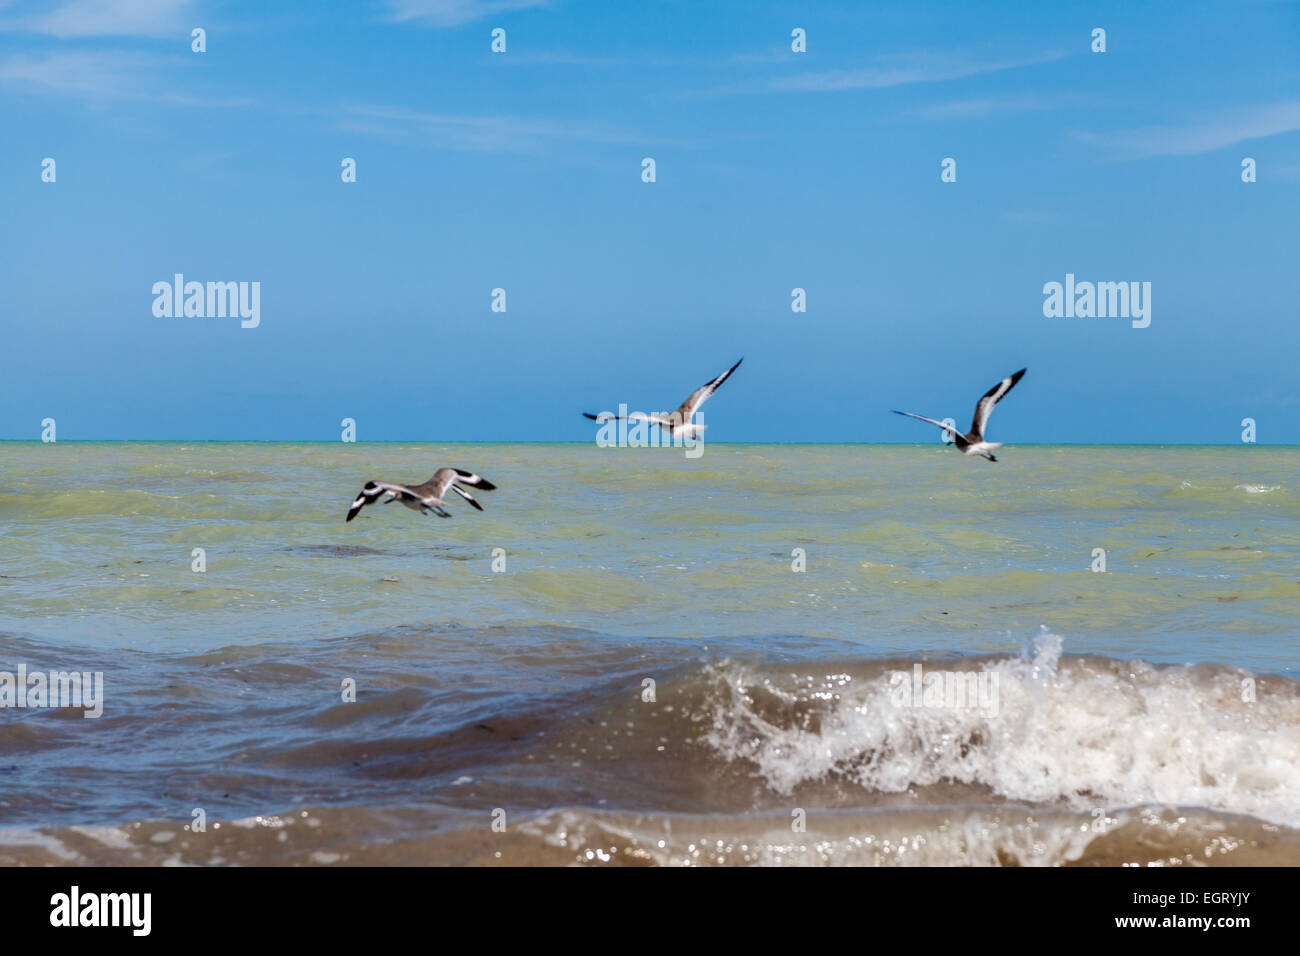 gehen, Angeln, Vögel Angeln und spielen in den Wellen des Ozeans Stockfoto